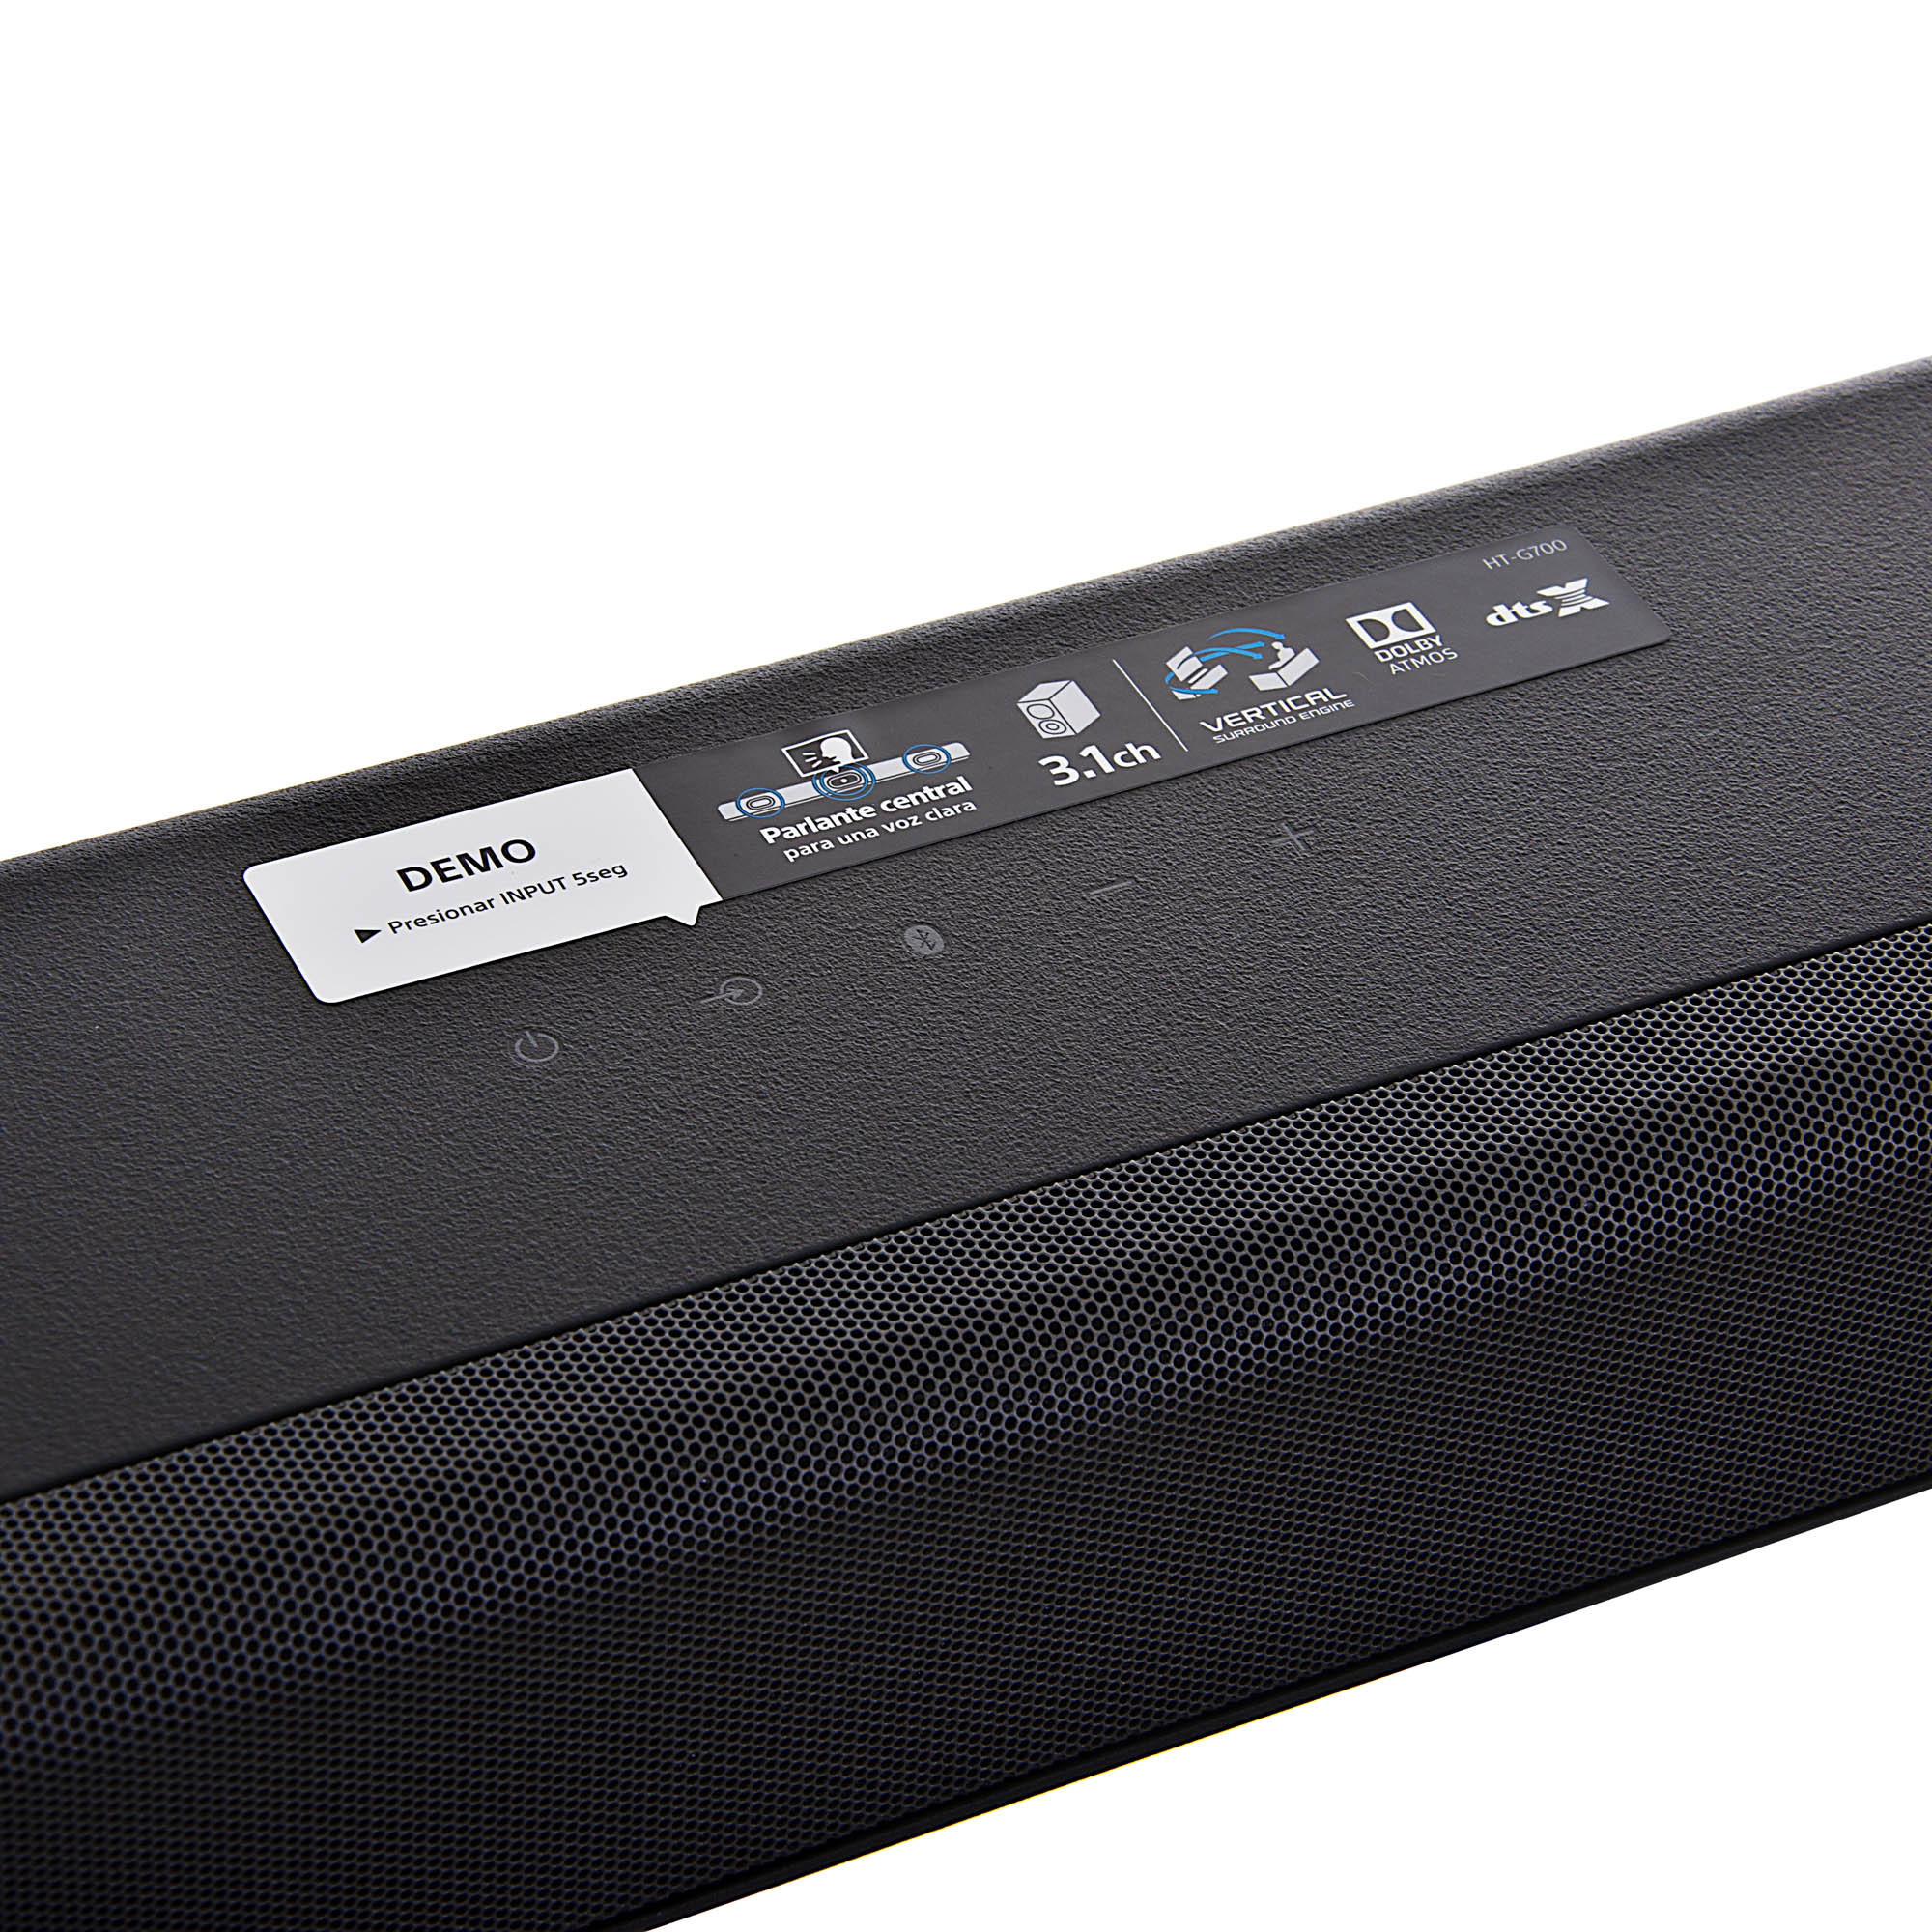 Sony HT-G700, excelente valor y audio en esta barra de sonido